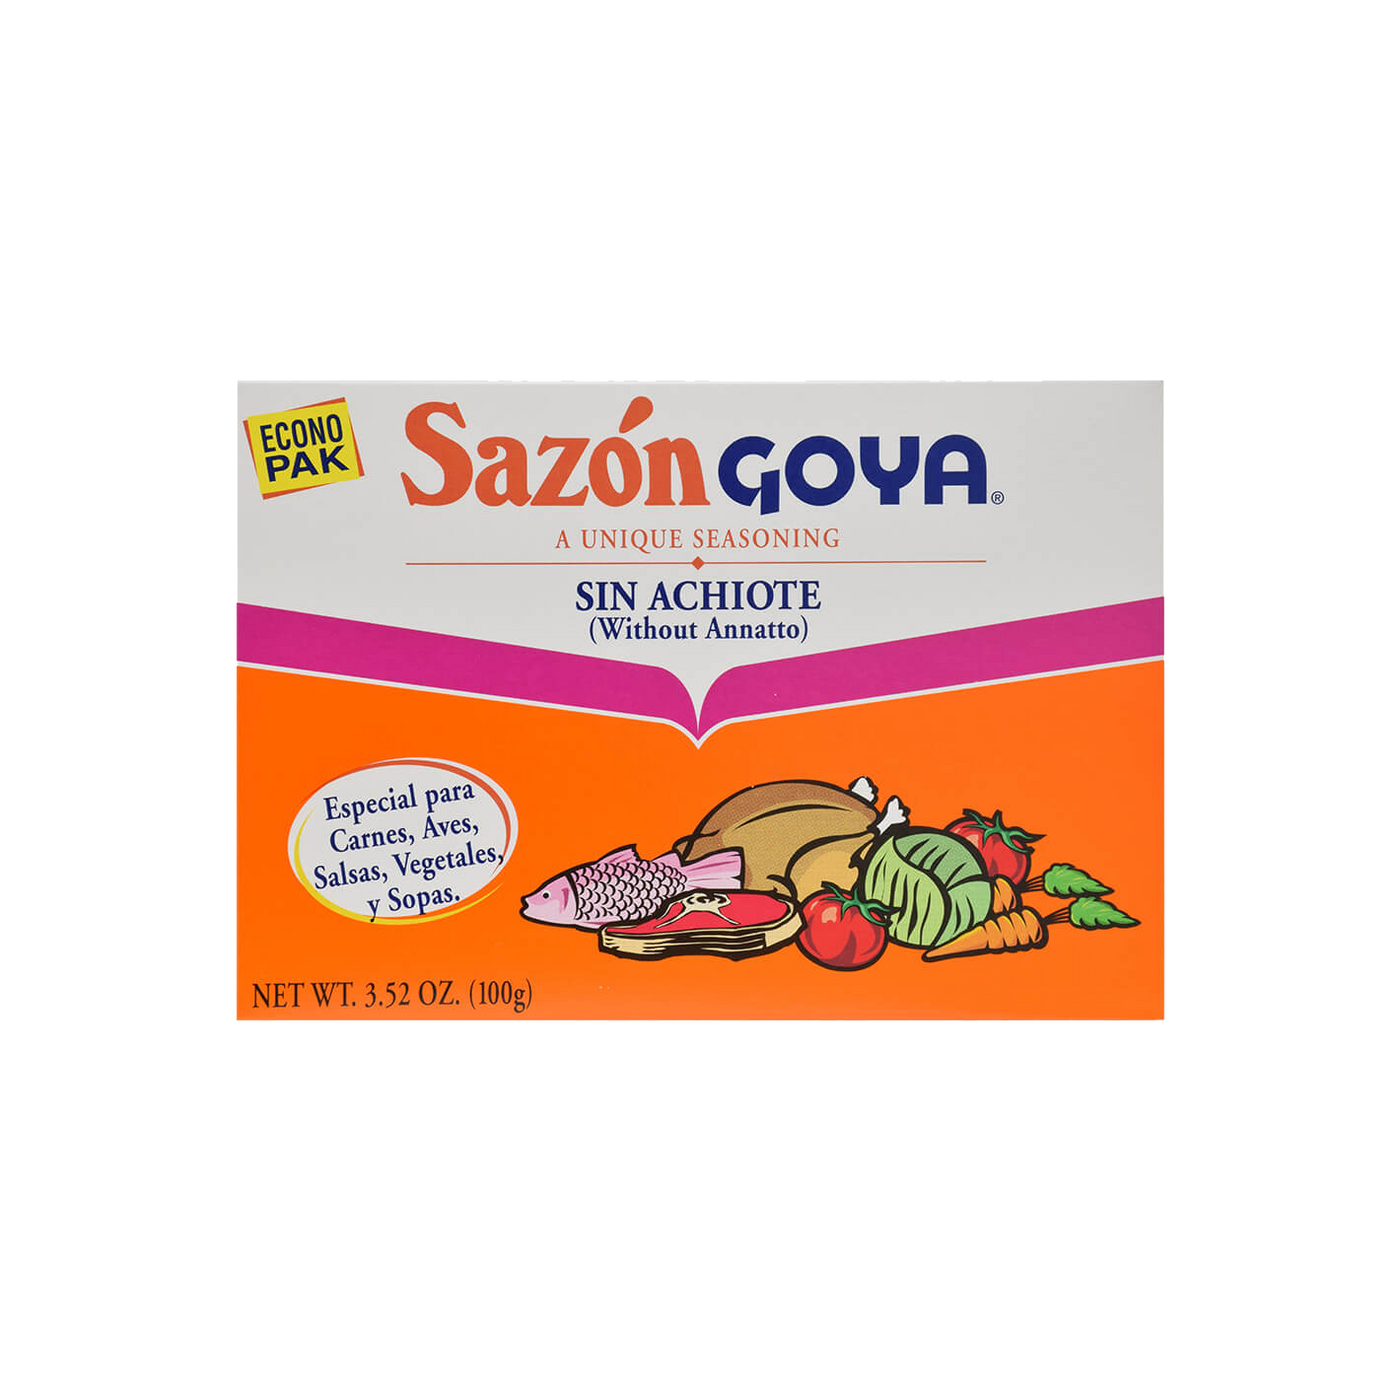   Goya Sazón  Without Annatto